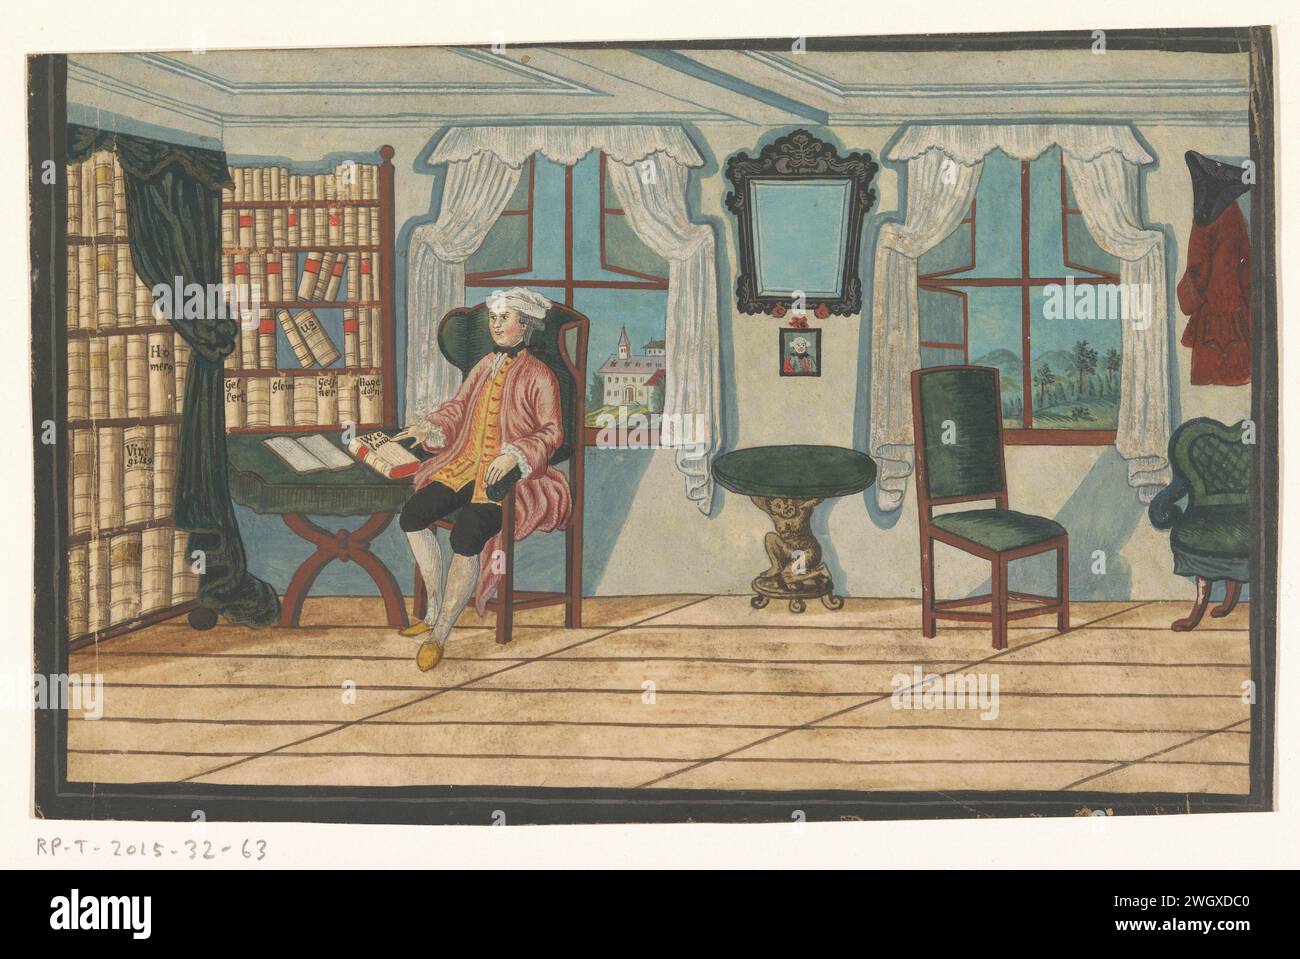 Innenraum mit einem Mann für ein Bücherregal, anonym, ca. 1750 - ca. 1800 Zeichnung vor dem offenen Fenster ist ein Mann für ein Bücherregal. Mit der rechten Hand greift er nach einem Buch des Schriftstellers Wieland, das auf dem Tisch liegt. An der Wand hängen ein Spiegel, ein Porträt und eine rote Jacke mit dreieckigem Stich. Unter dem Spiegel befindet sich ein Tisch, bestehend aus einem Mann, der eine runde Tischplatte trägt. Deutschland Pergament (tierisches Material). Bücherregale mit Deckfarbe. Buch. Spiegeln. Kopf – Zahnrad: tricorn Stockfoto